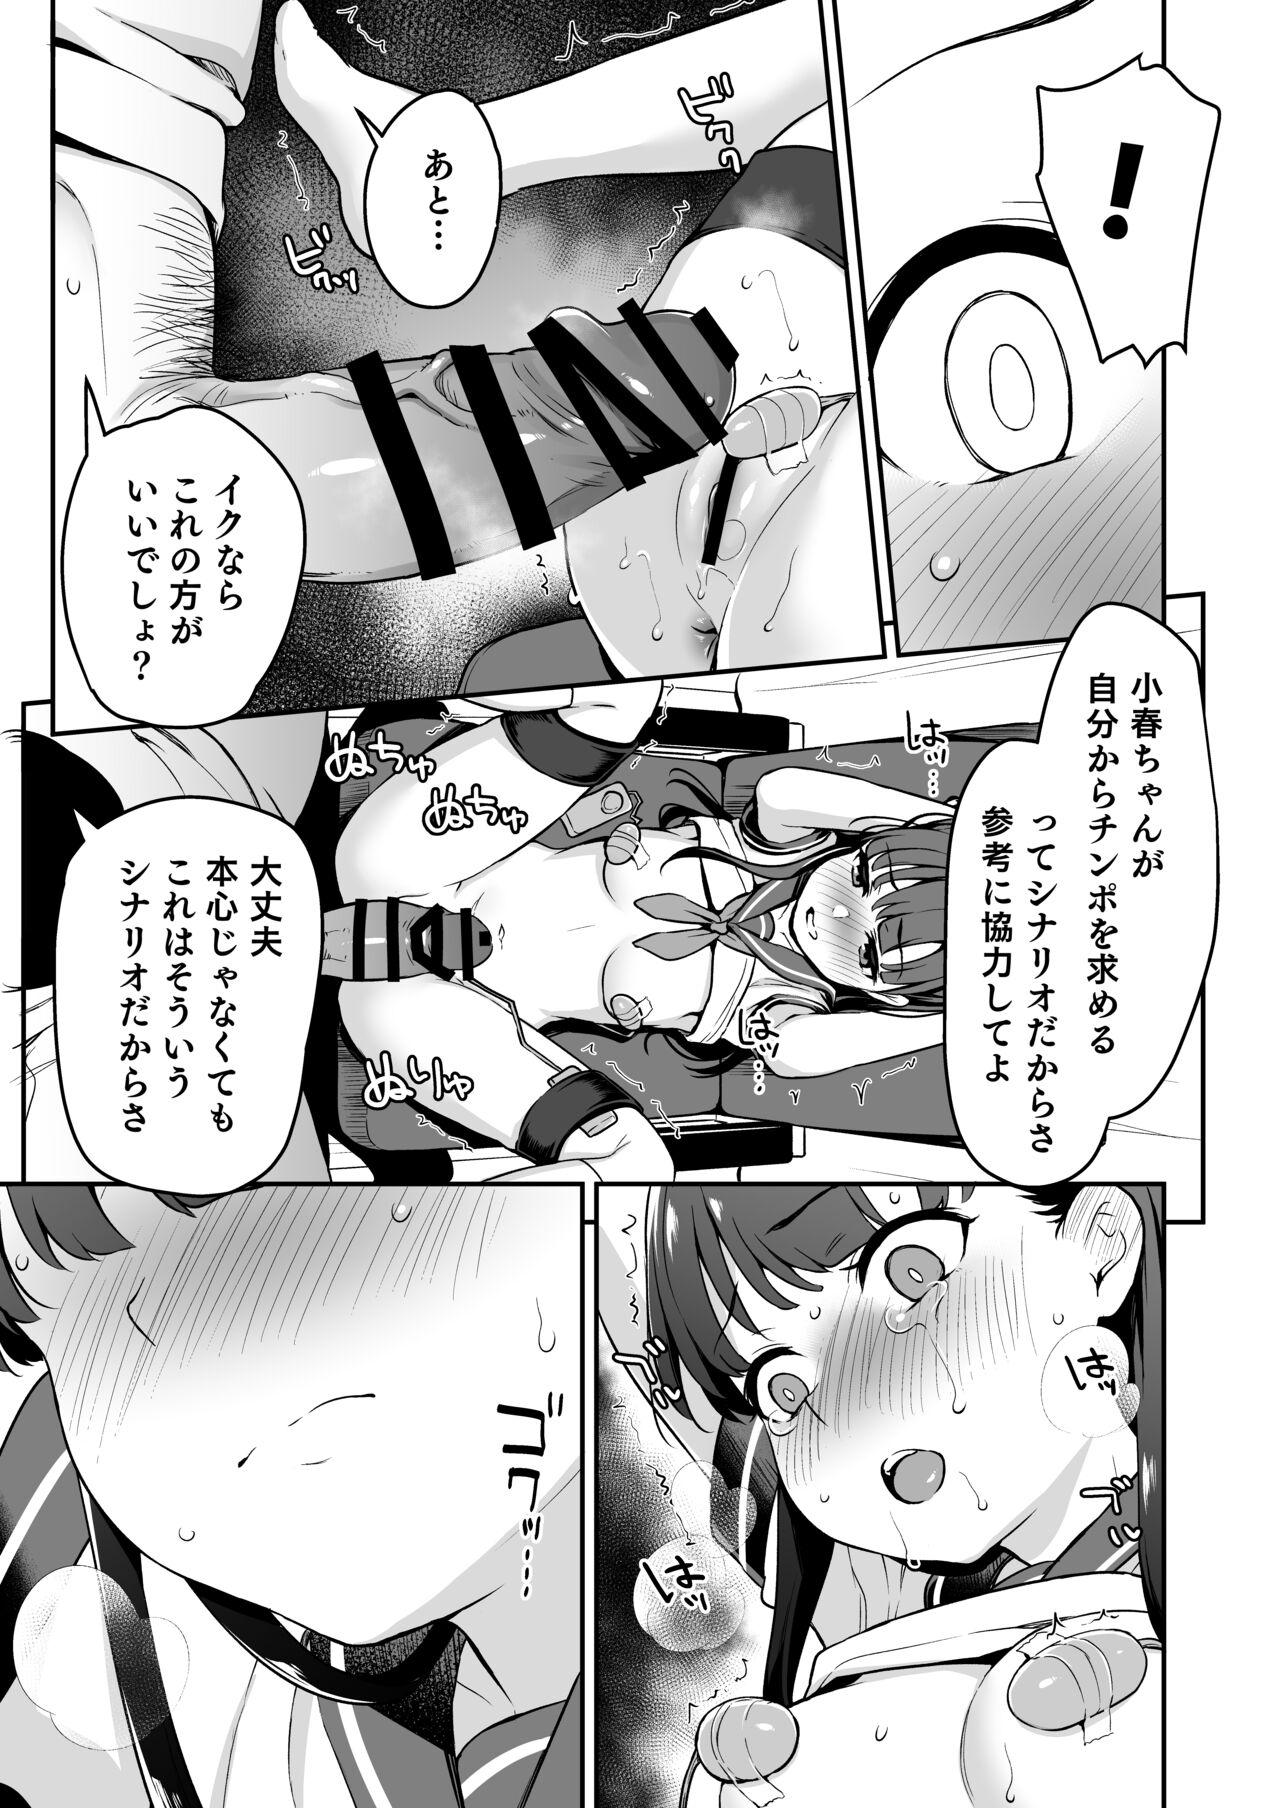 Hardcore Do-M Shoujo wa, Manga no Naka de. - Original Gaygroup - Page 10